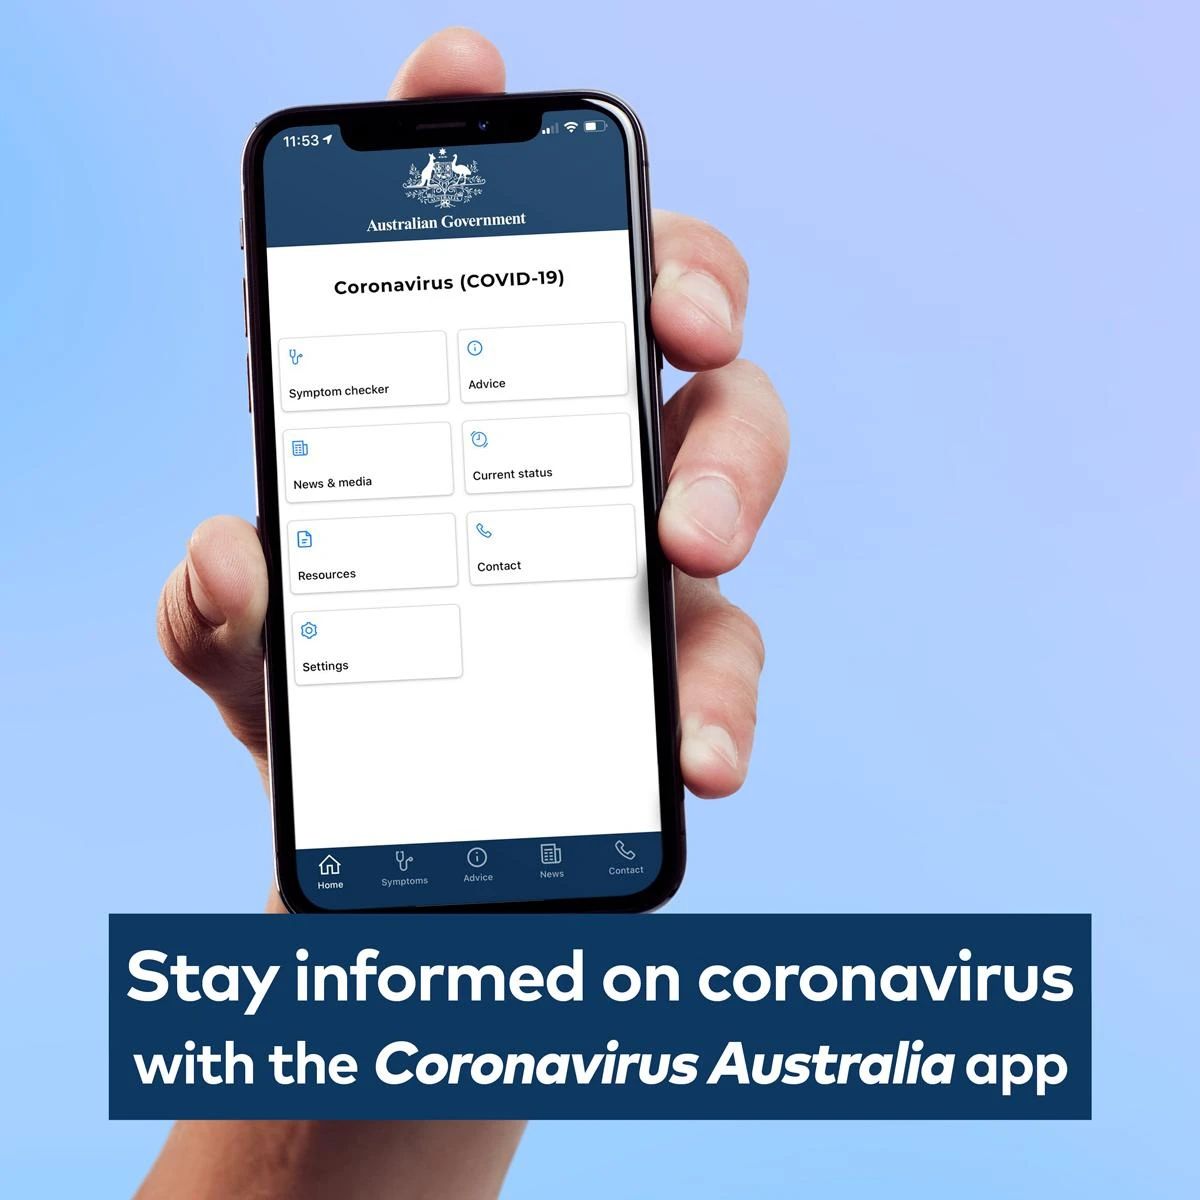 澳大利亚政府推出了可供免费下载的冠状病毒应用程序